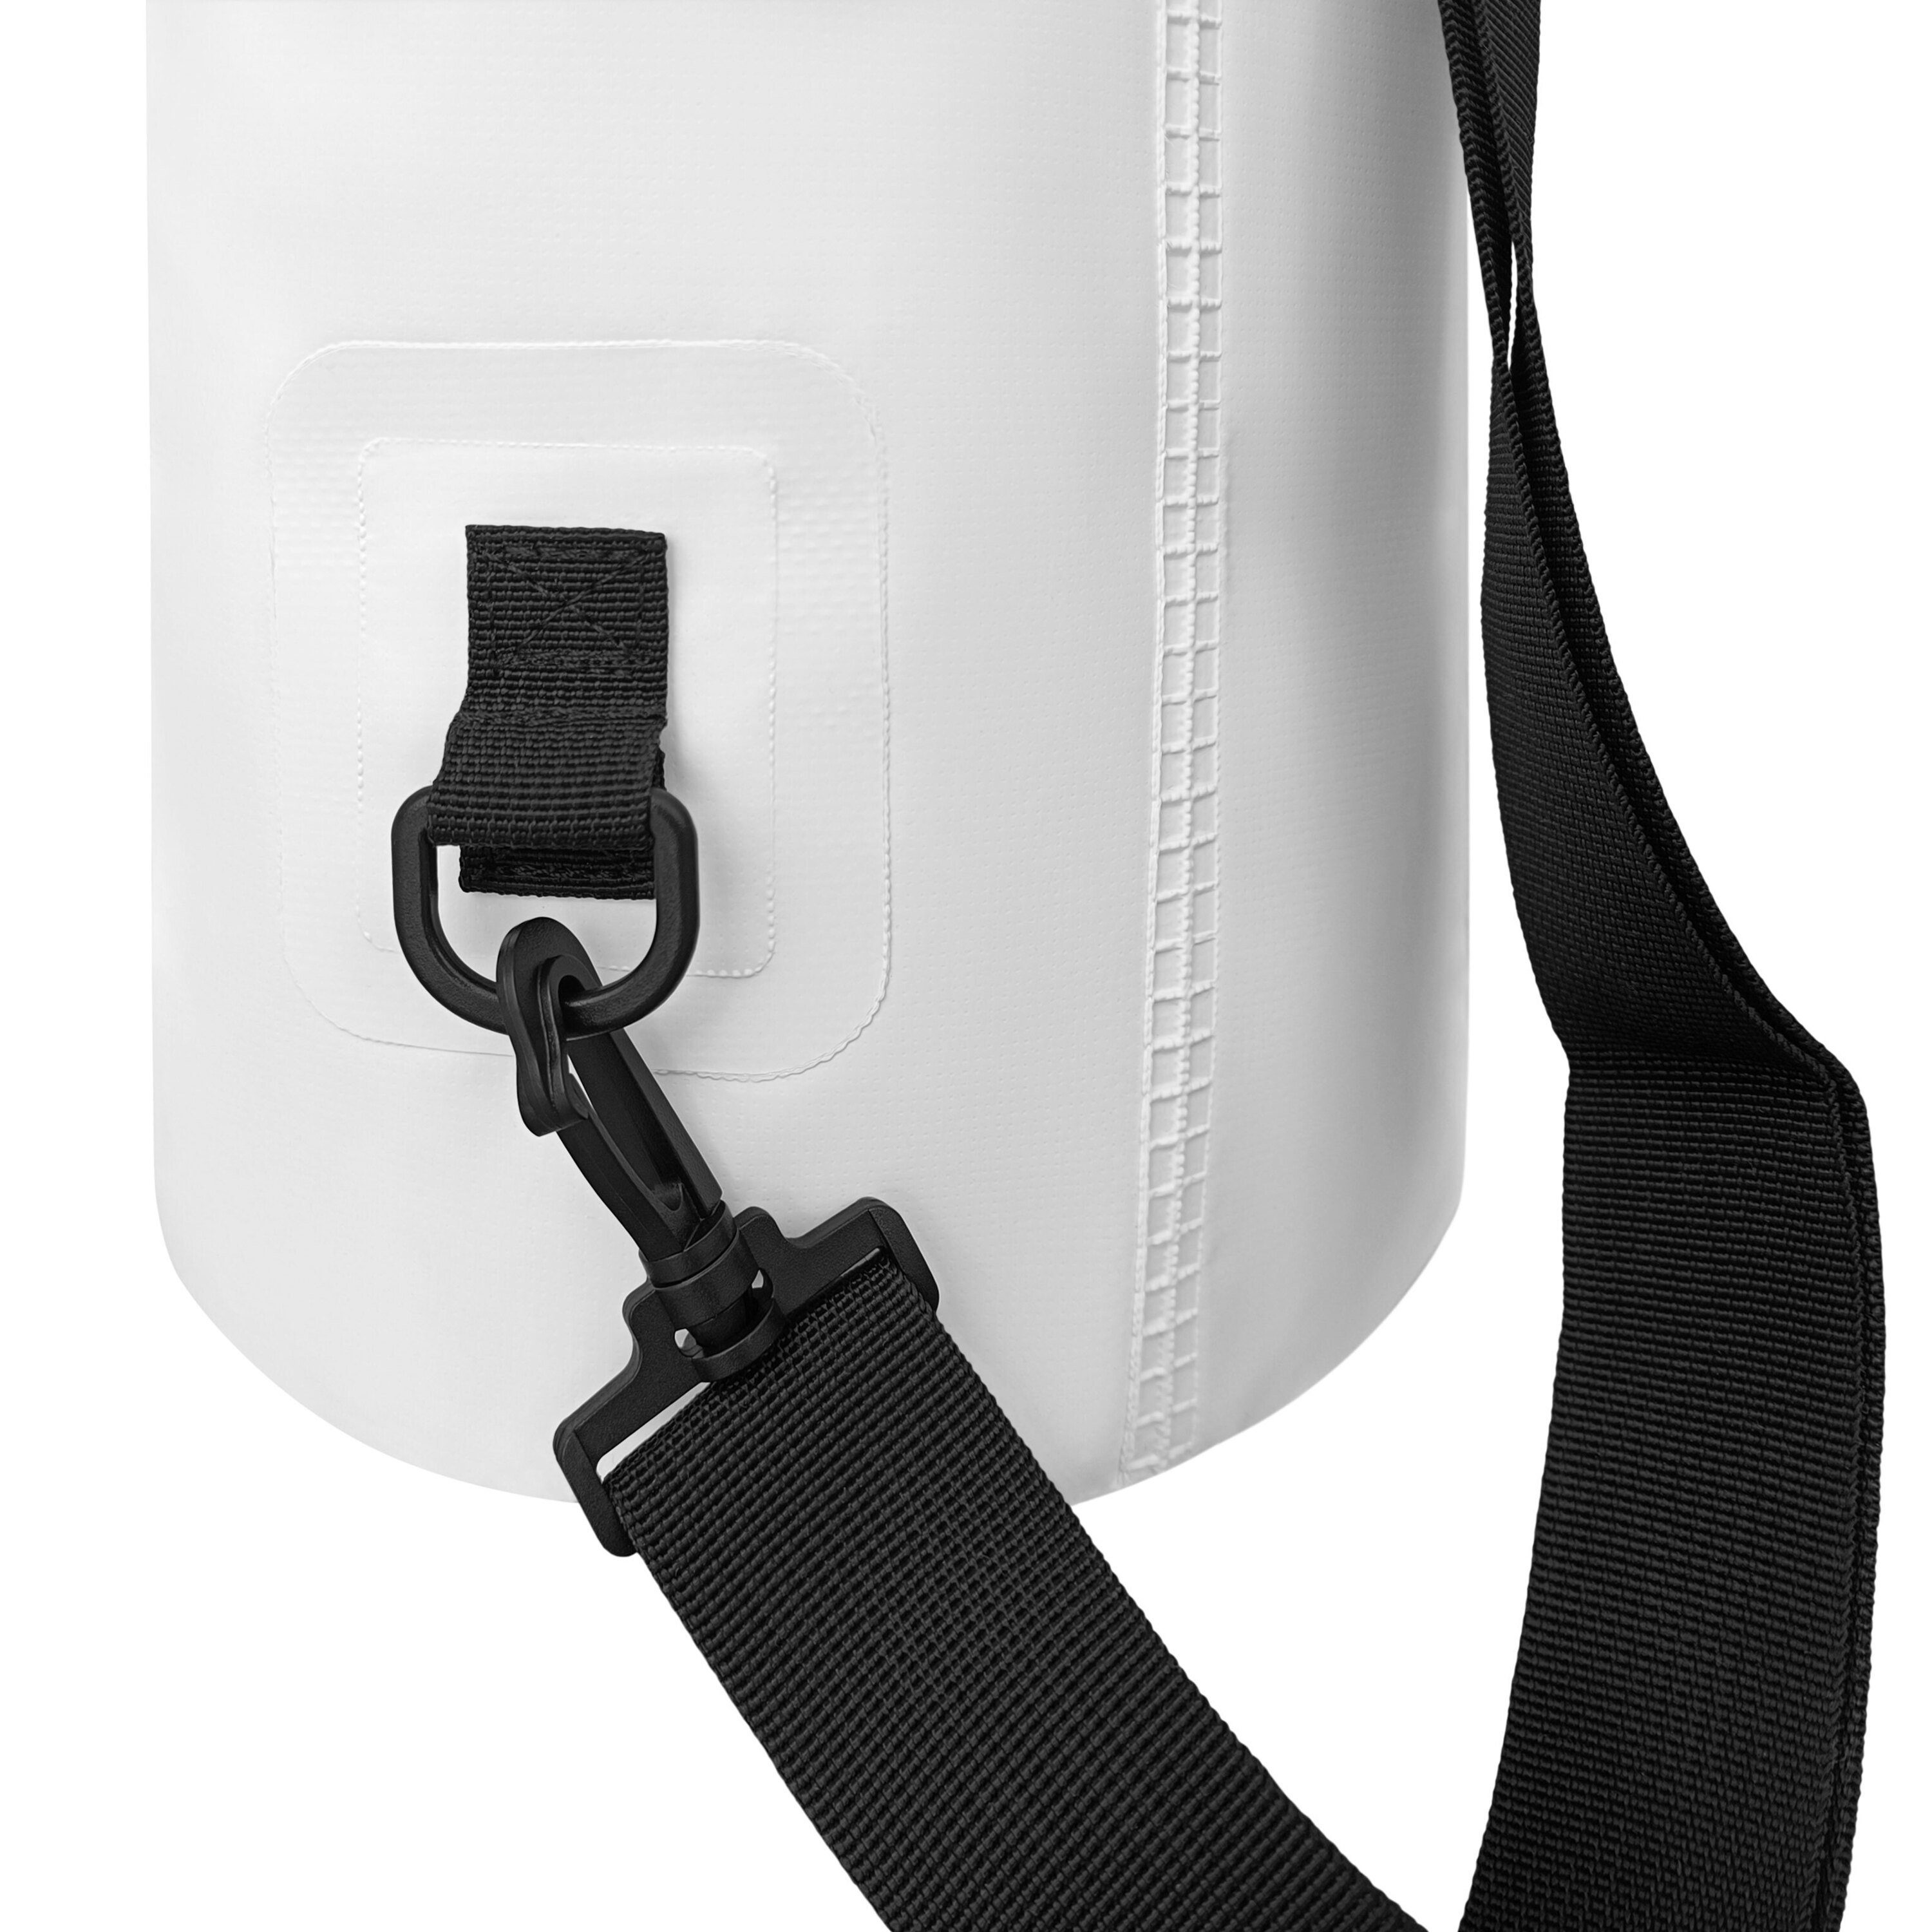 Drybag ISAR packsack YEAZ wasserfester weiß 1,5l